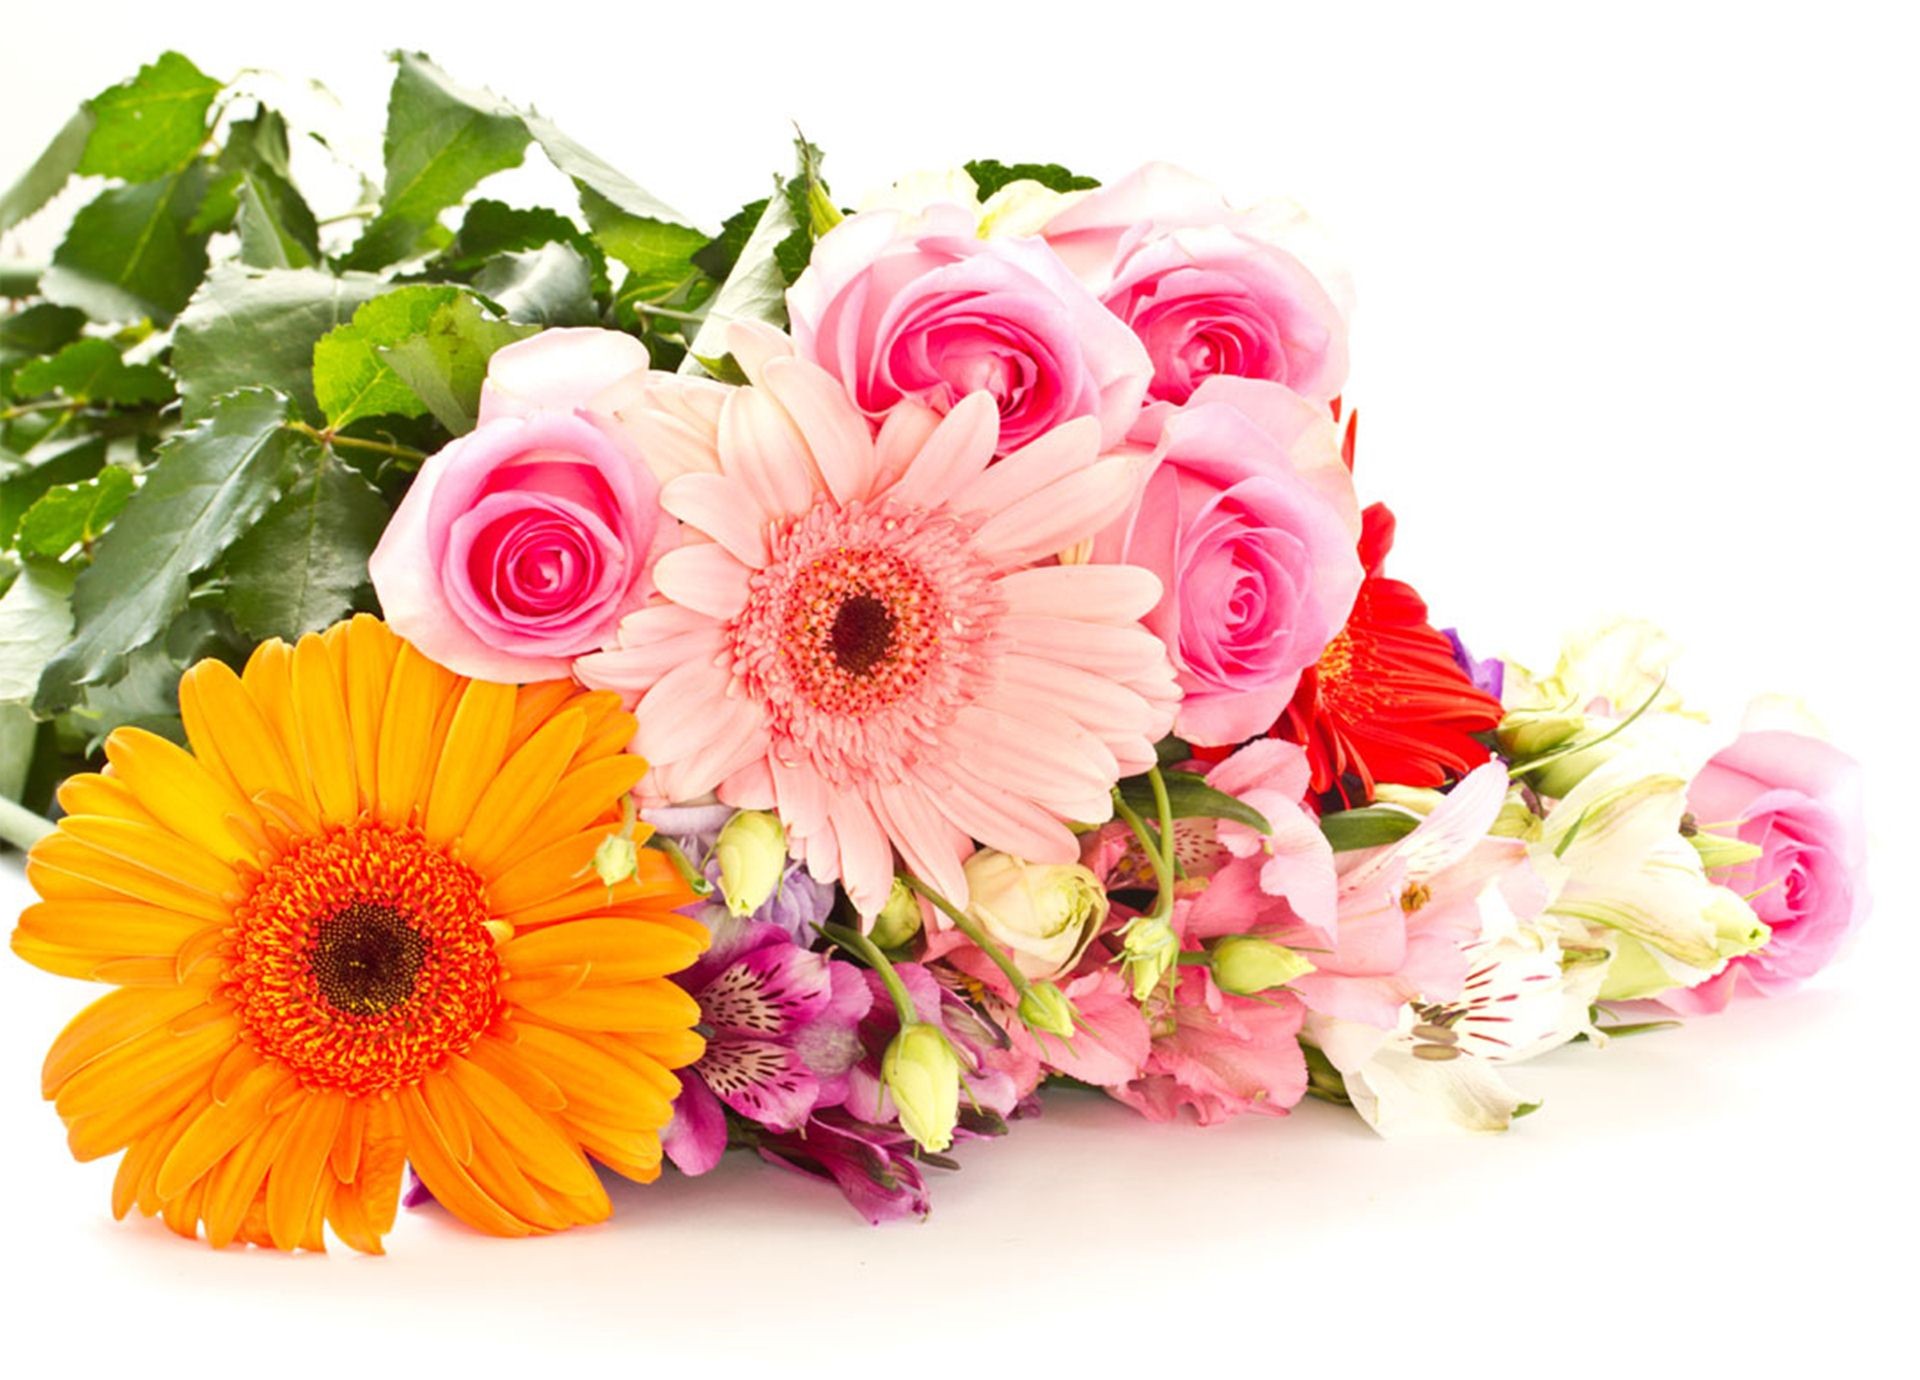 어머니 벽지 무료 다운로드,꽃,꽃 피는 식물,꽃다발,꽃을 자르다,거베라